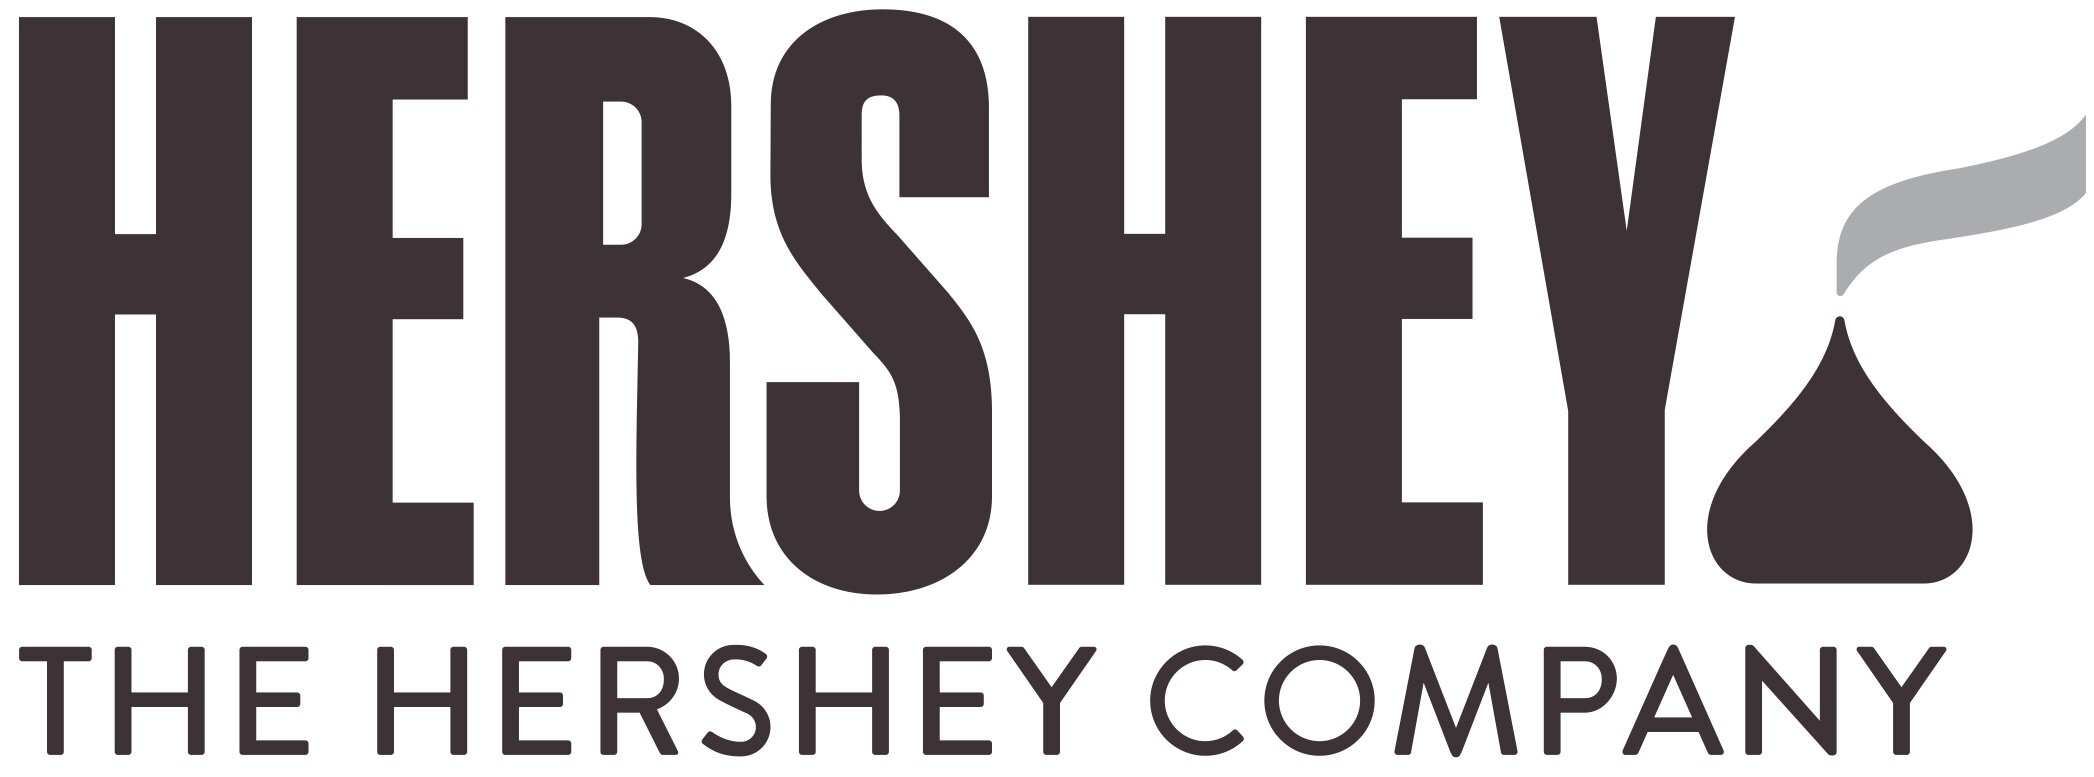 hershey_logo_08-29-2014.jpg